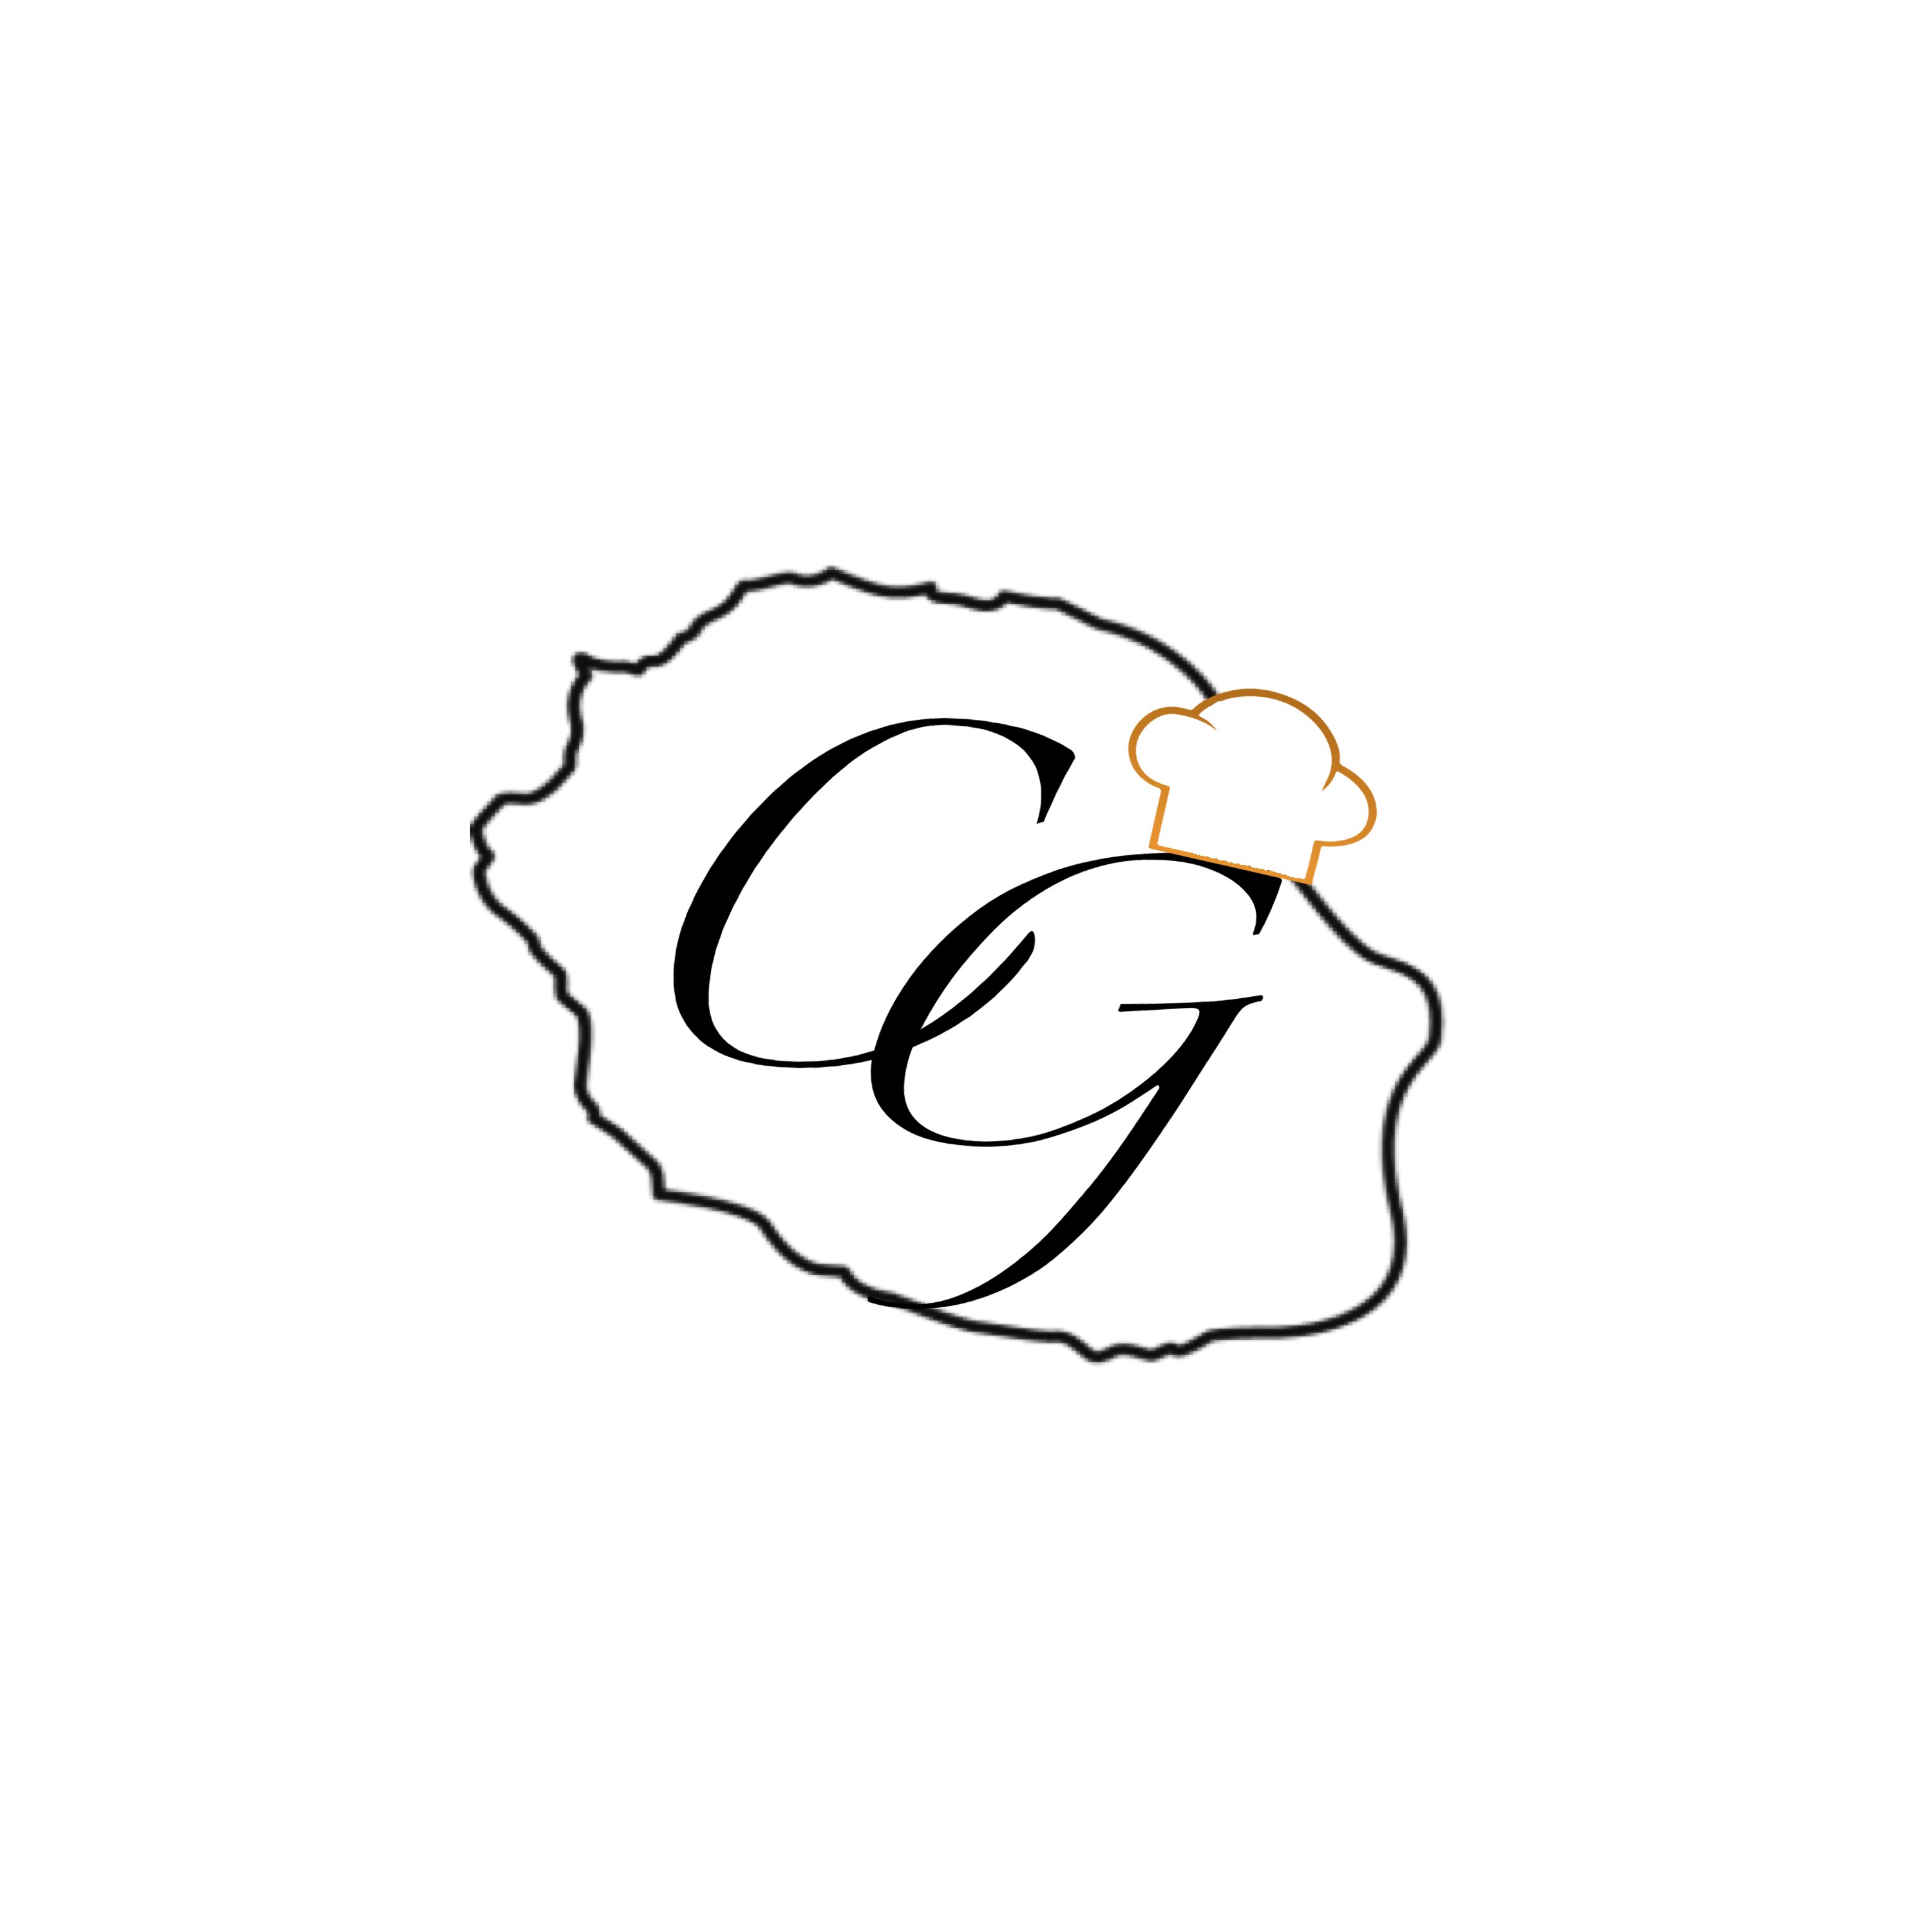 Le logo du Challenge Gastronomique